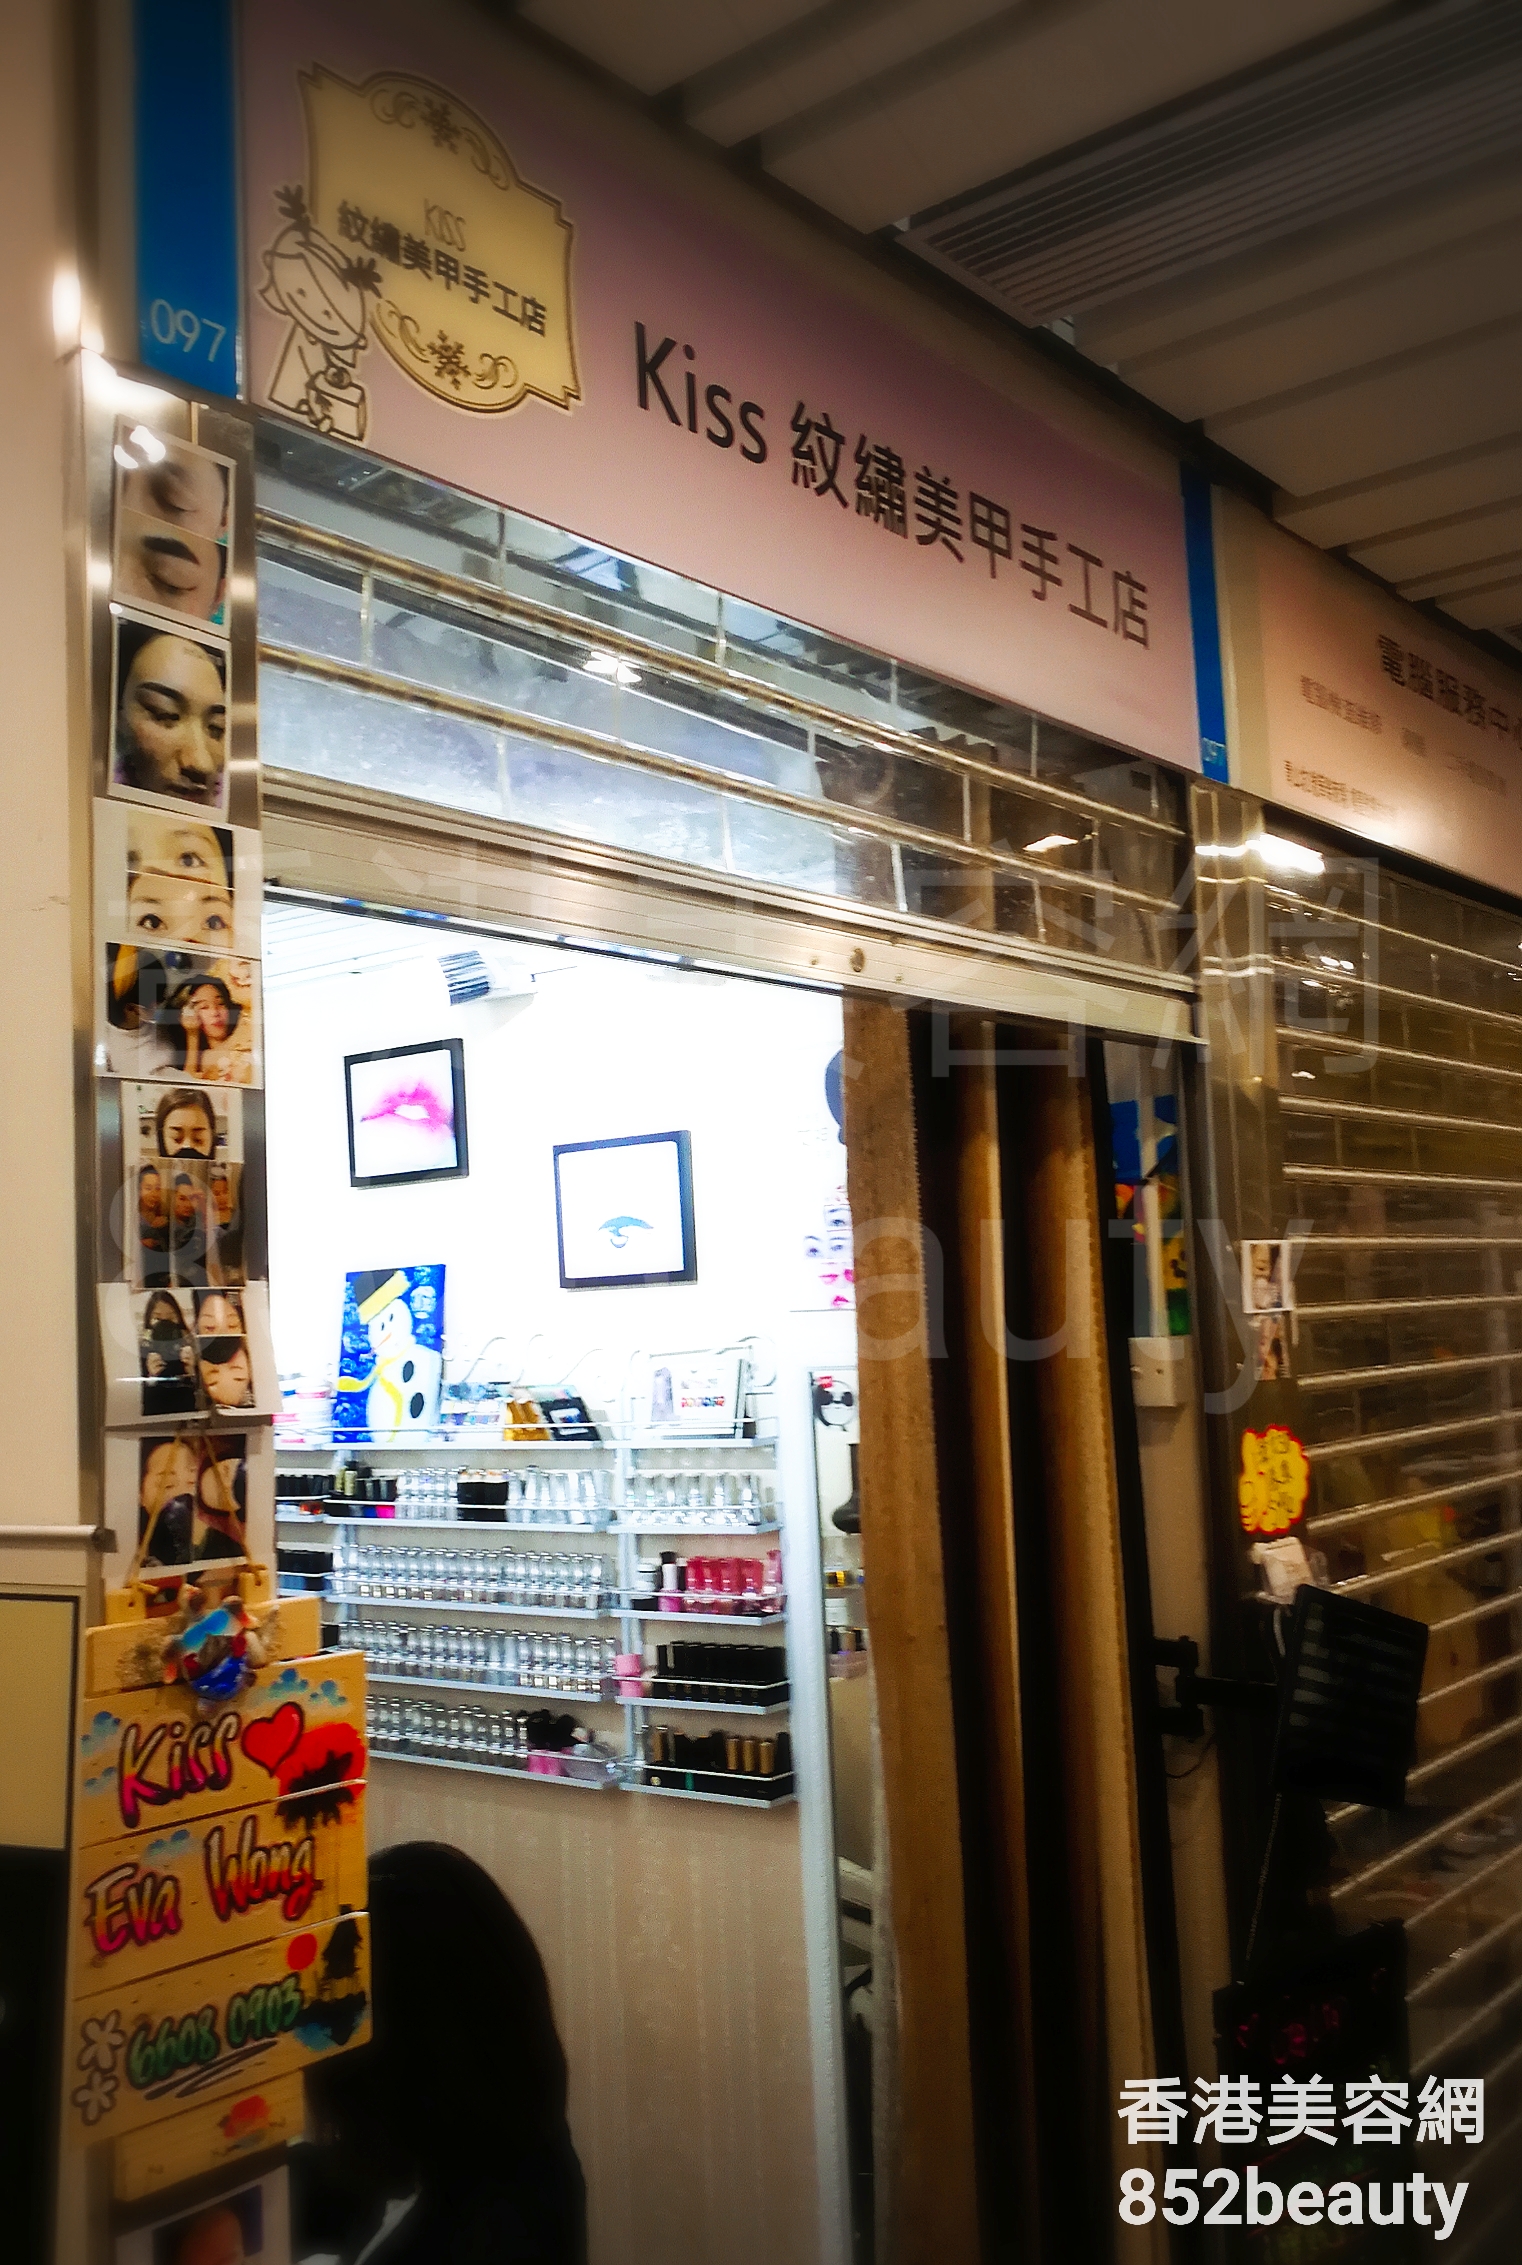 香港美容網 Hong Kong Beauty Salon 美容院 / 美容師: Kiss 紋繡美甲手工店